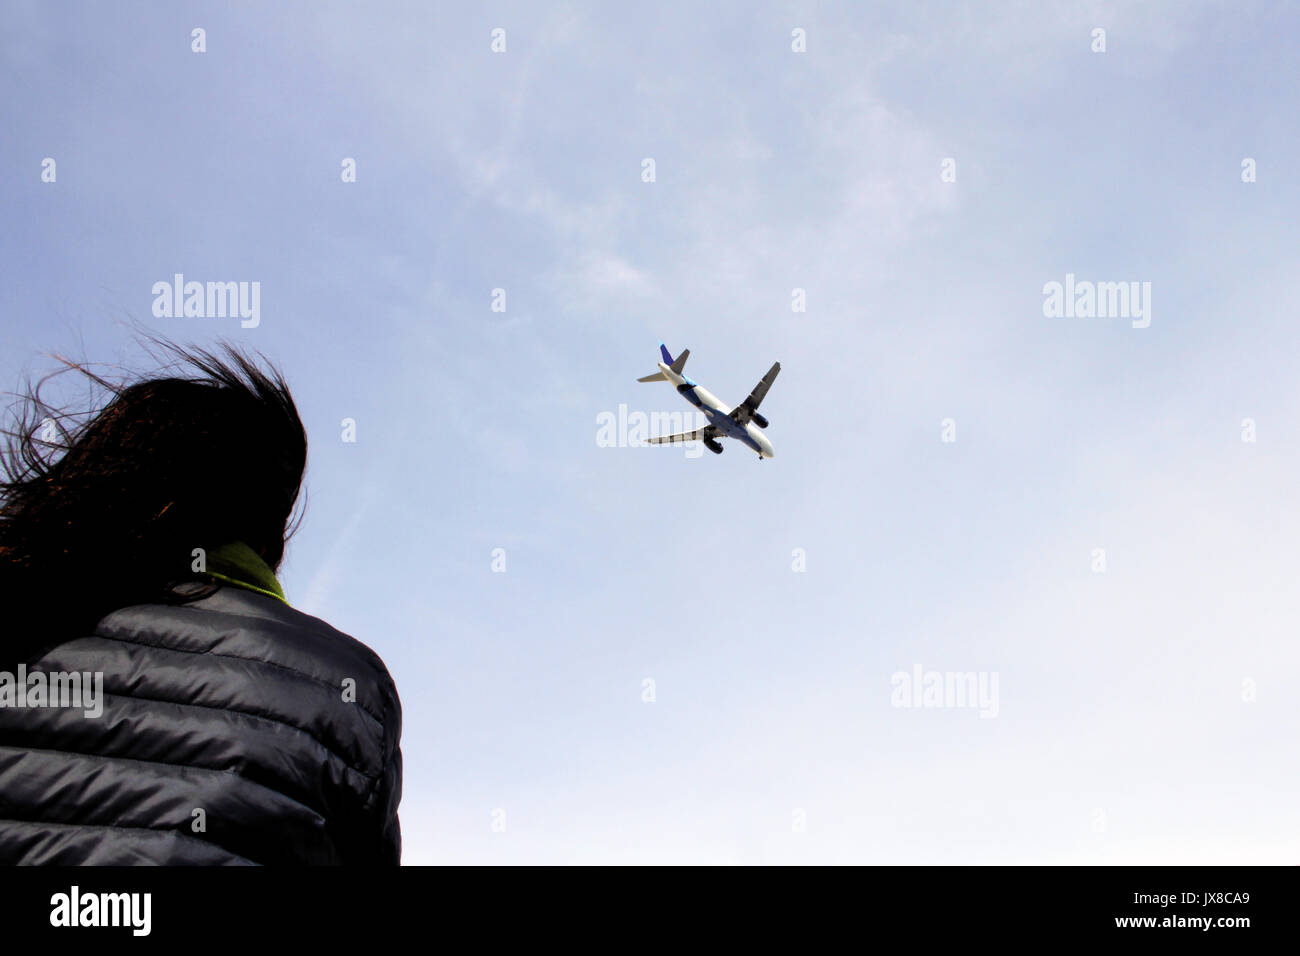 Une jeune femme aux cheveux noirs regarde un avion qu'il s'apprête à atterrir. Banque D'Images